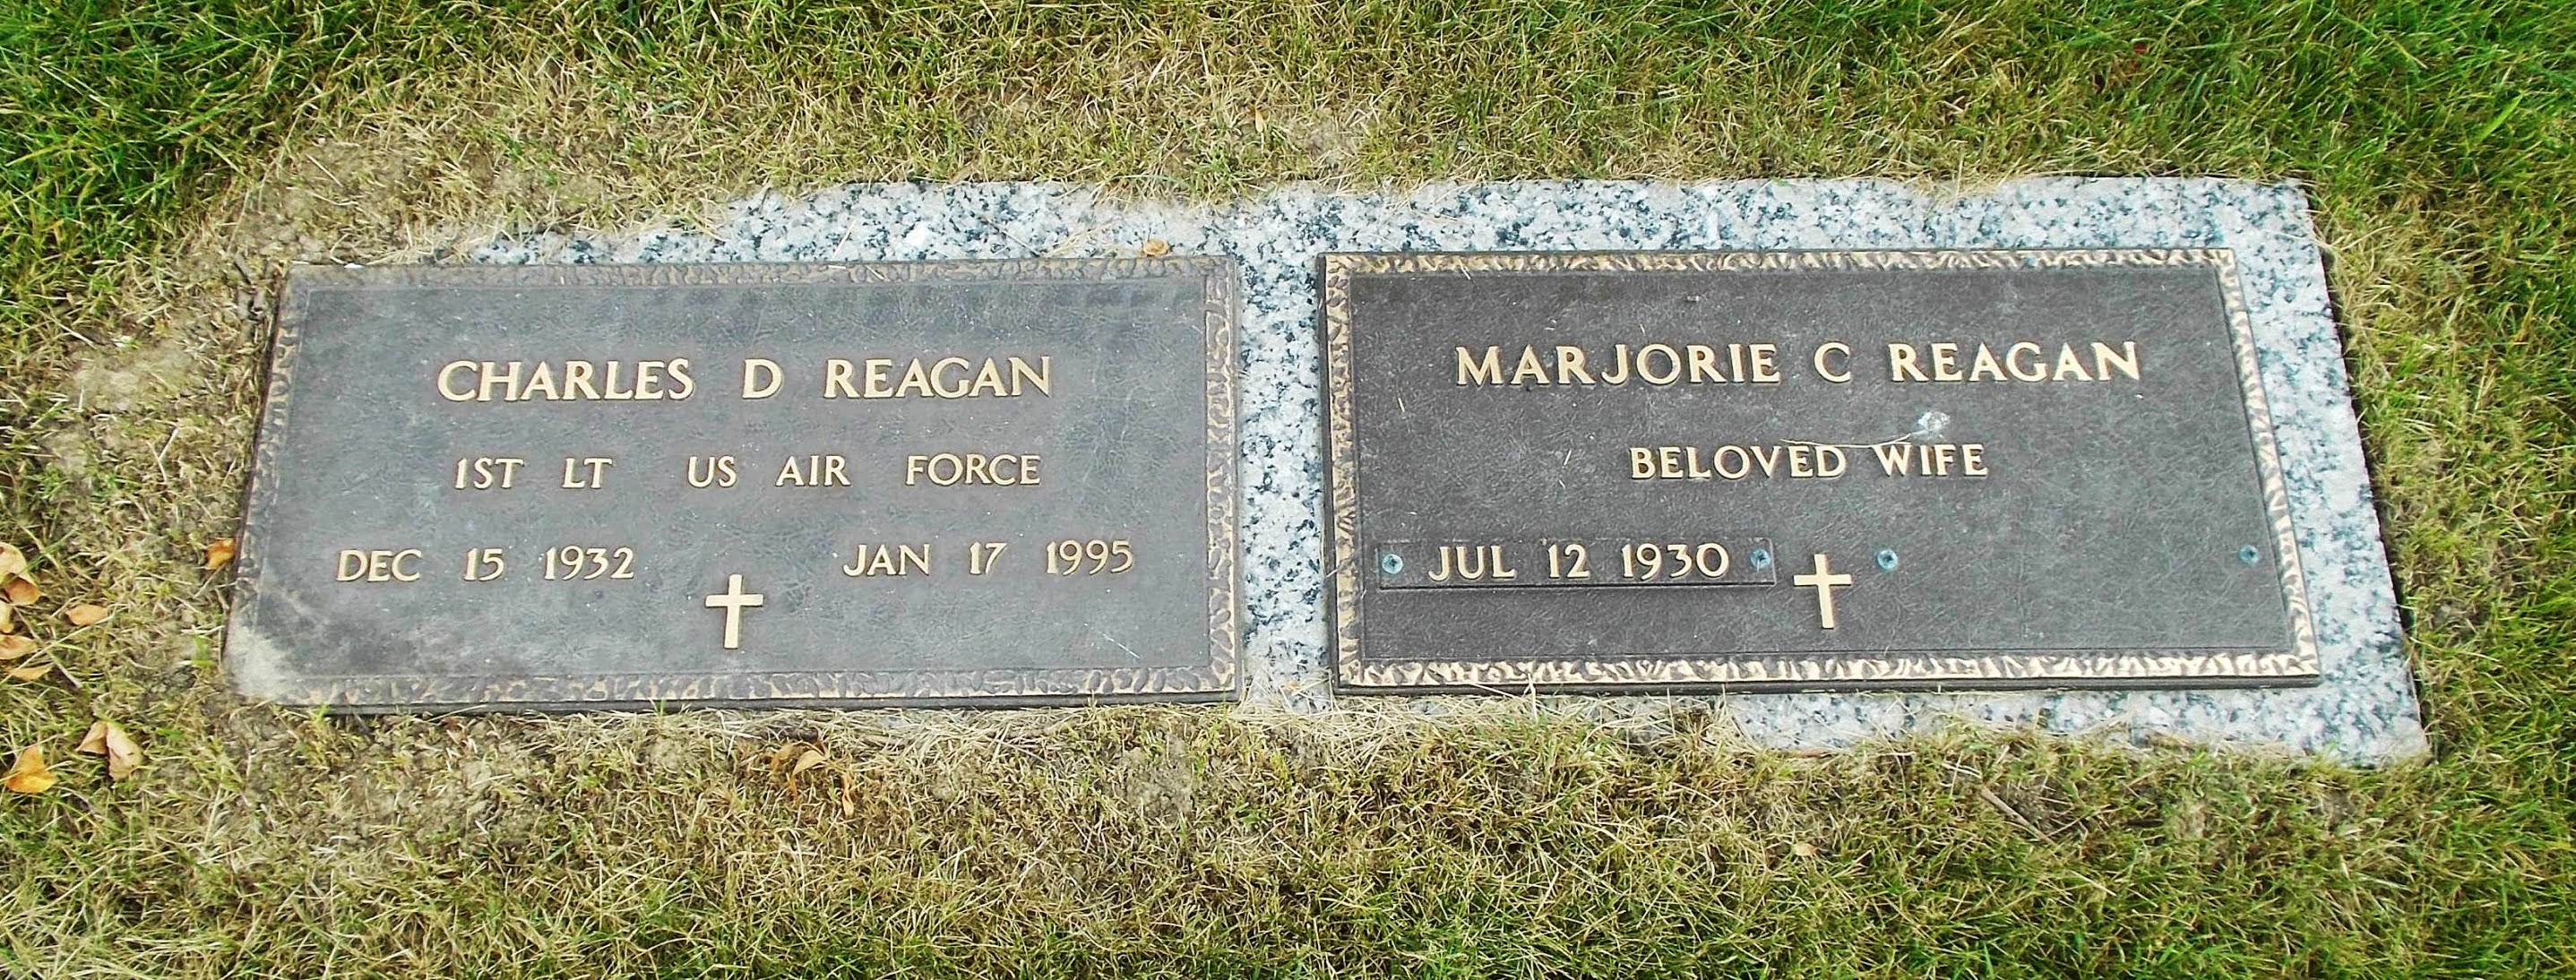 Marjorie C Reagan